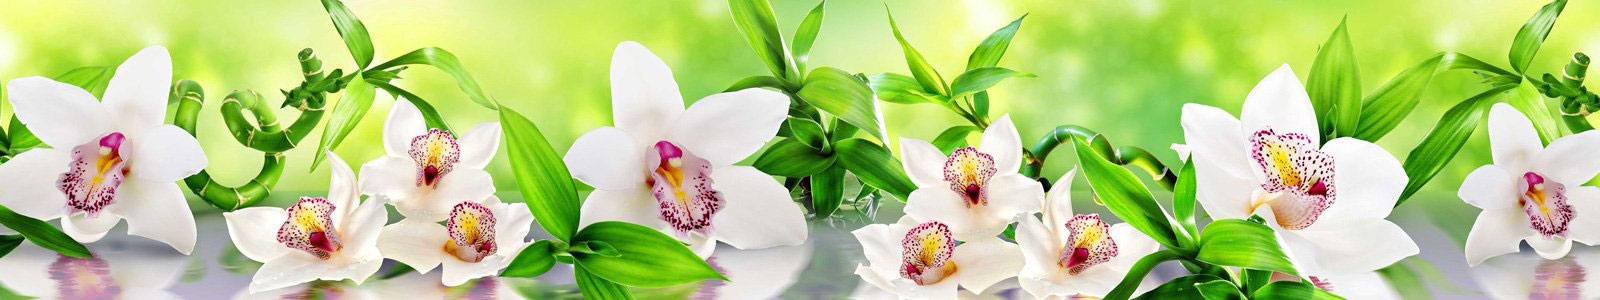 №6366 - Чудесные белые орхидеи с листьями бамбука на зеленом фоне